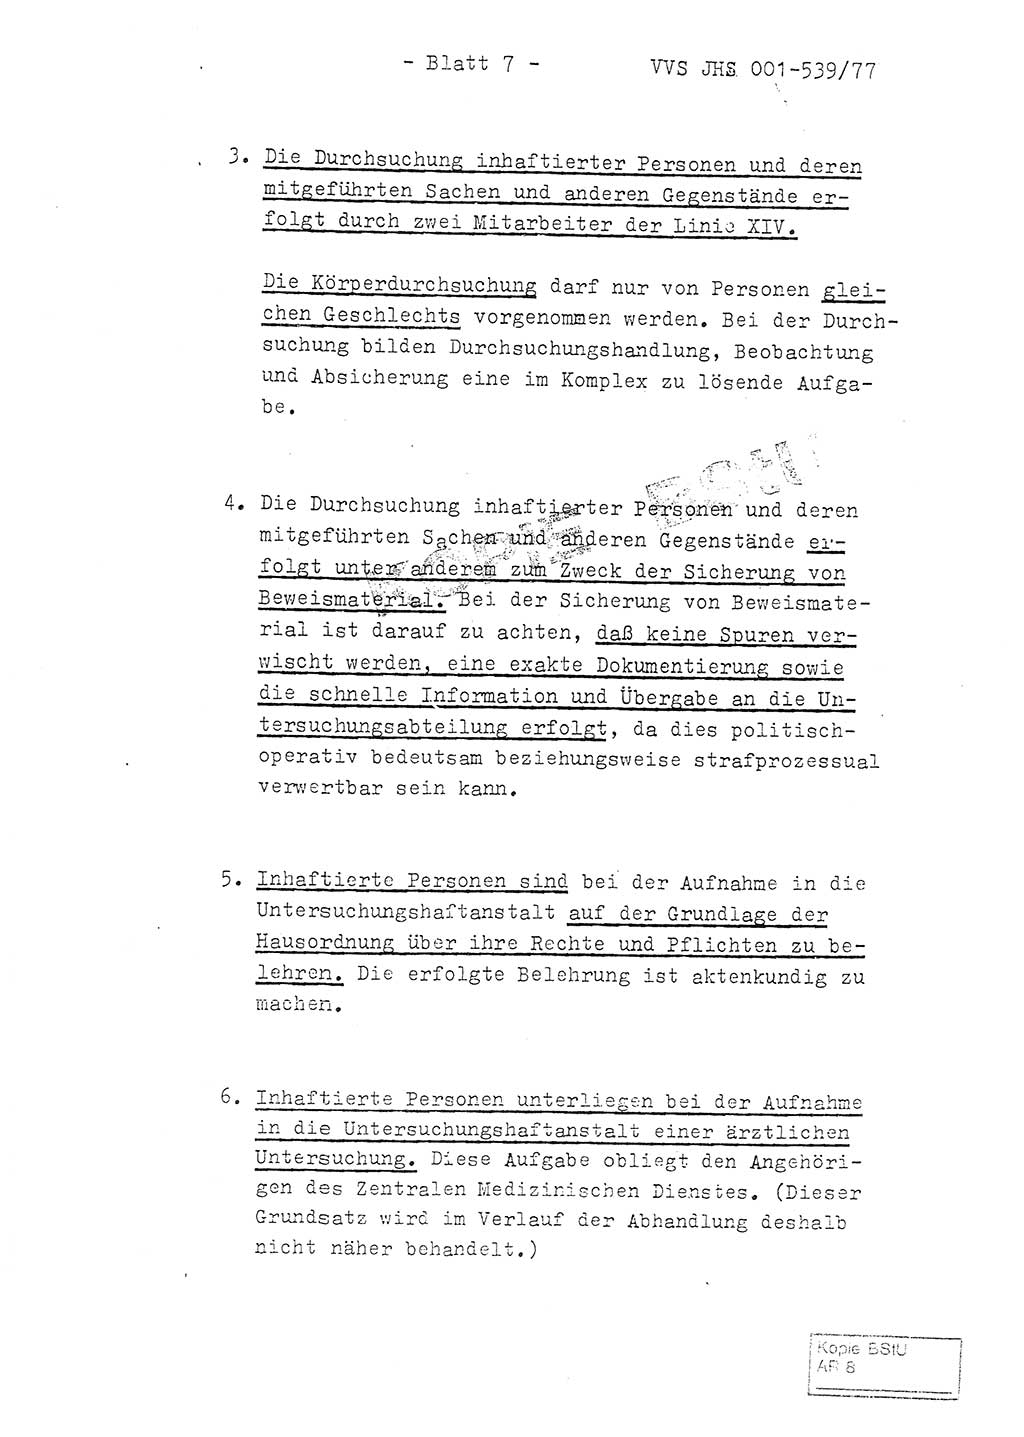 Fachschulabschlußarbeit Hauptmann Dietrich Jung (Abt. ⅩⅣ), Leutnant Klaus Klötzner (Abt. ⅩⅣ), Ministerium für Staatssicherheit (MfS) [Deutsche Demokratische Republik (DDR)], Juristische Hochschule (JHS), Vertrauliche Verschlußsache (VVS) 001-539/77, Potsdam 1978, Seite 7 (FS-Abschl.-Arb. MfS DDR JHS VVS 001-539/77 1978, S. 7)